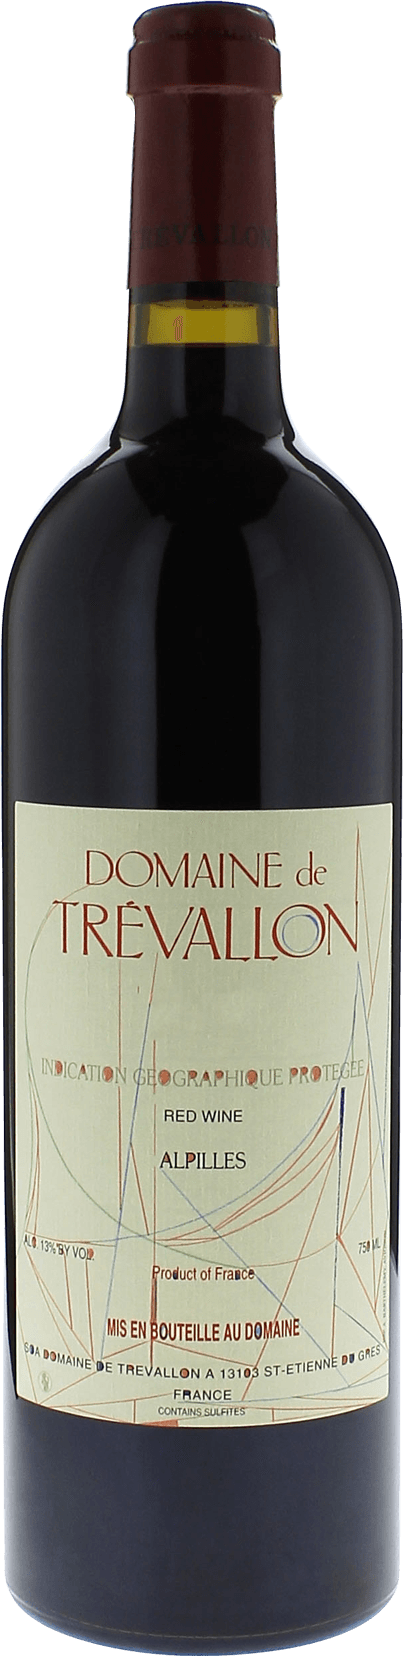 Domaine de trevallon rouge 2010  Vin de Pays, Provence